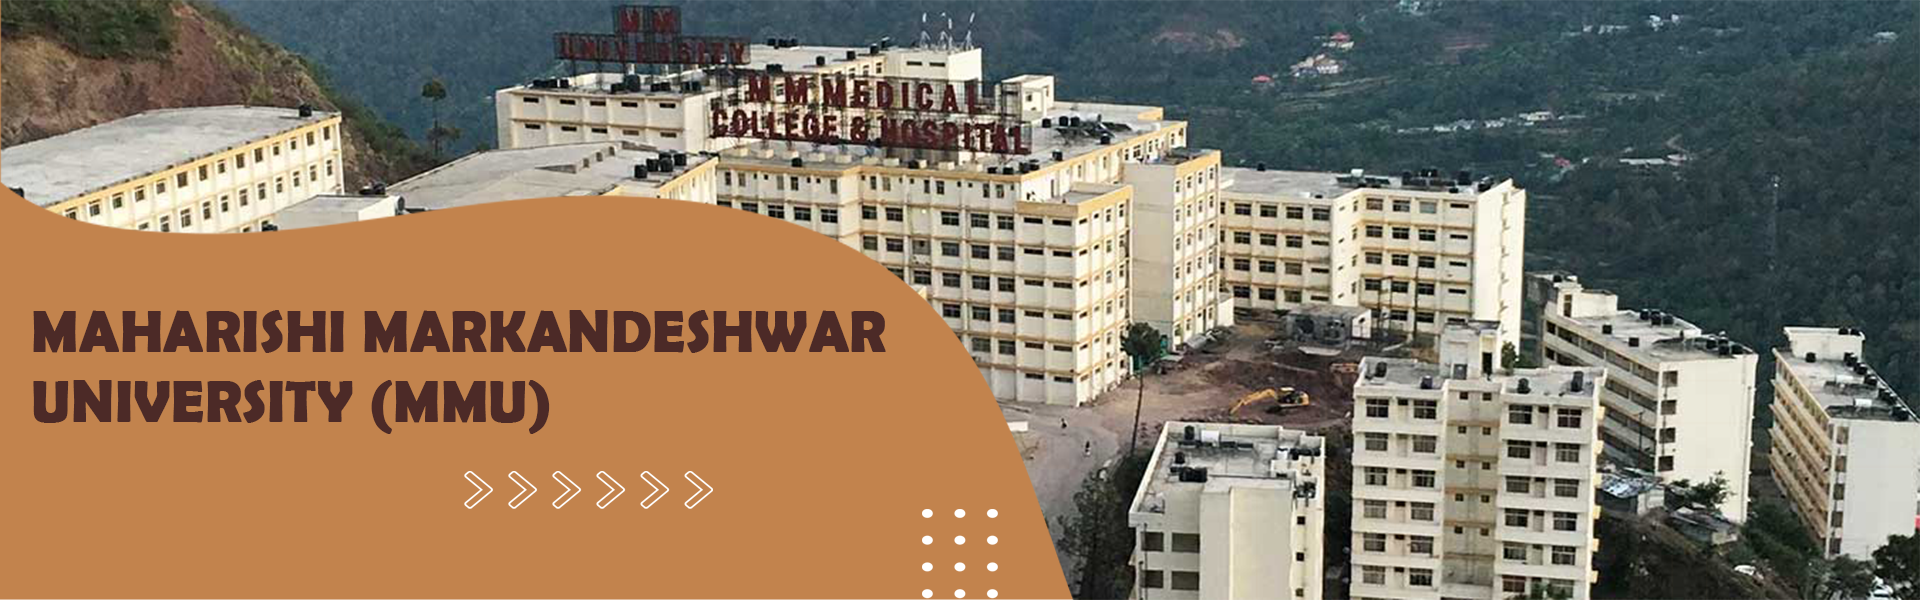 Maharishi Markandeshwar University (MMU)